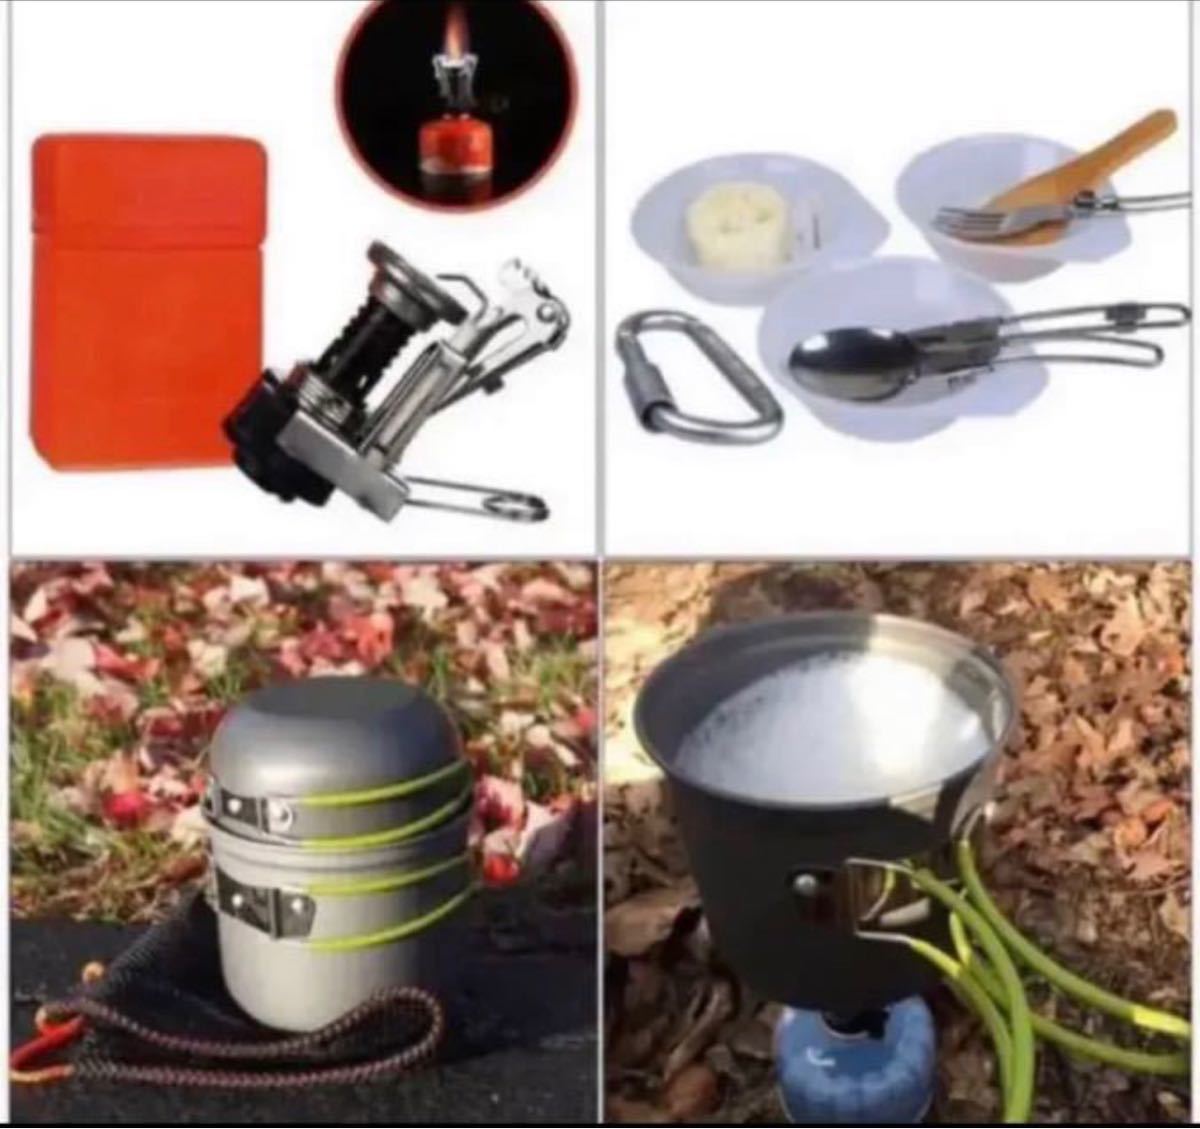 キャンプ用食器 キャンプクッカーセット 調理セット登山用鍋 収納袋付き 1-2人